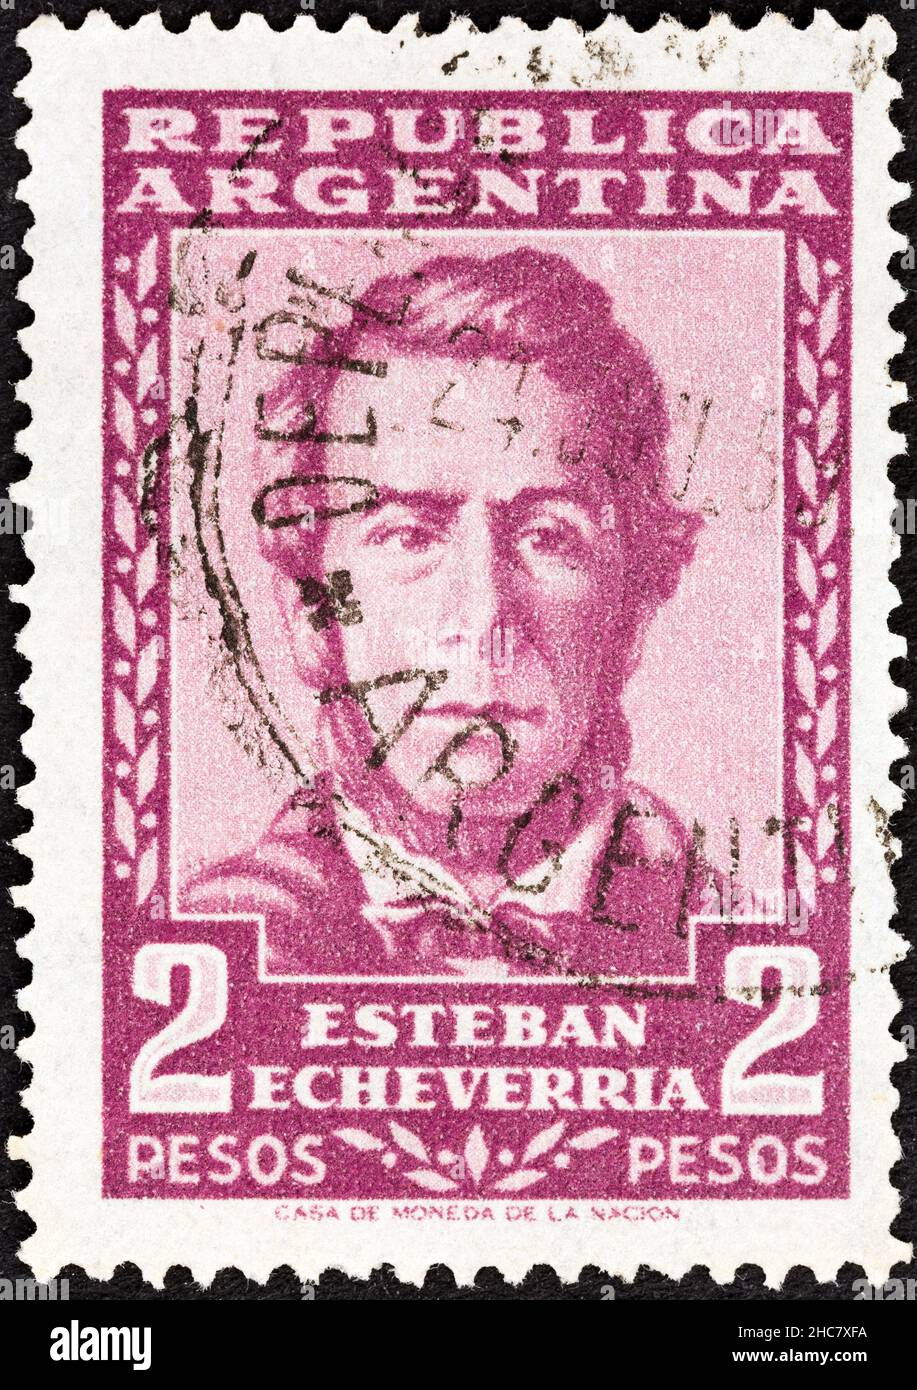 ARGENTINIEN - UM 1957: Eine in Argentinien gedruckte Briefmarke zeigt den Dichter Esteban Echeverria (1805-1851), um 1957. Stockfoto